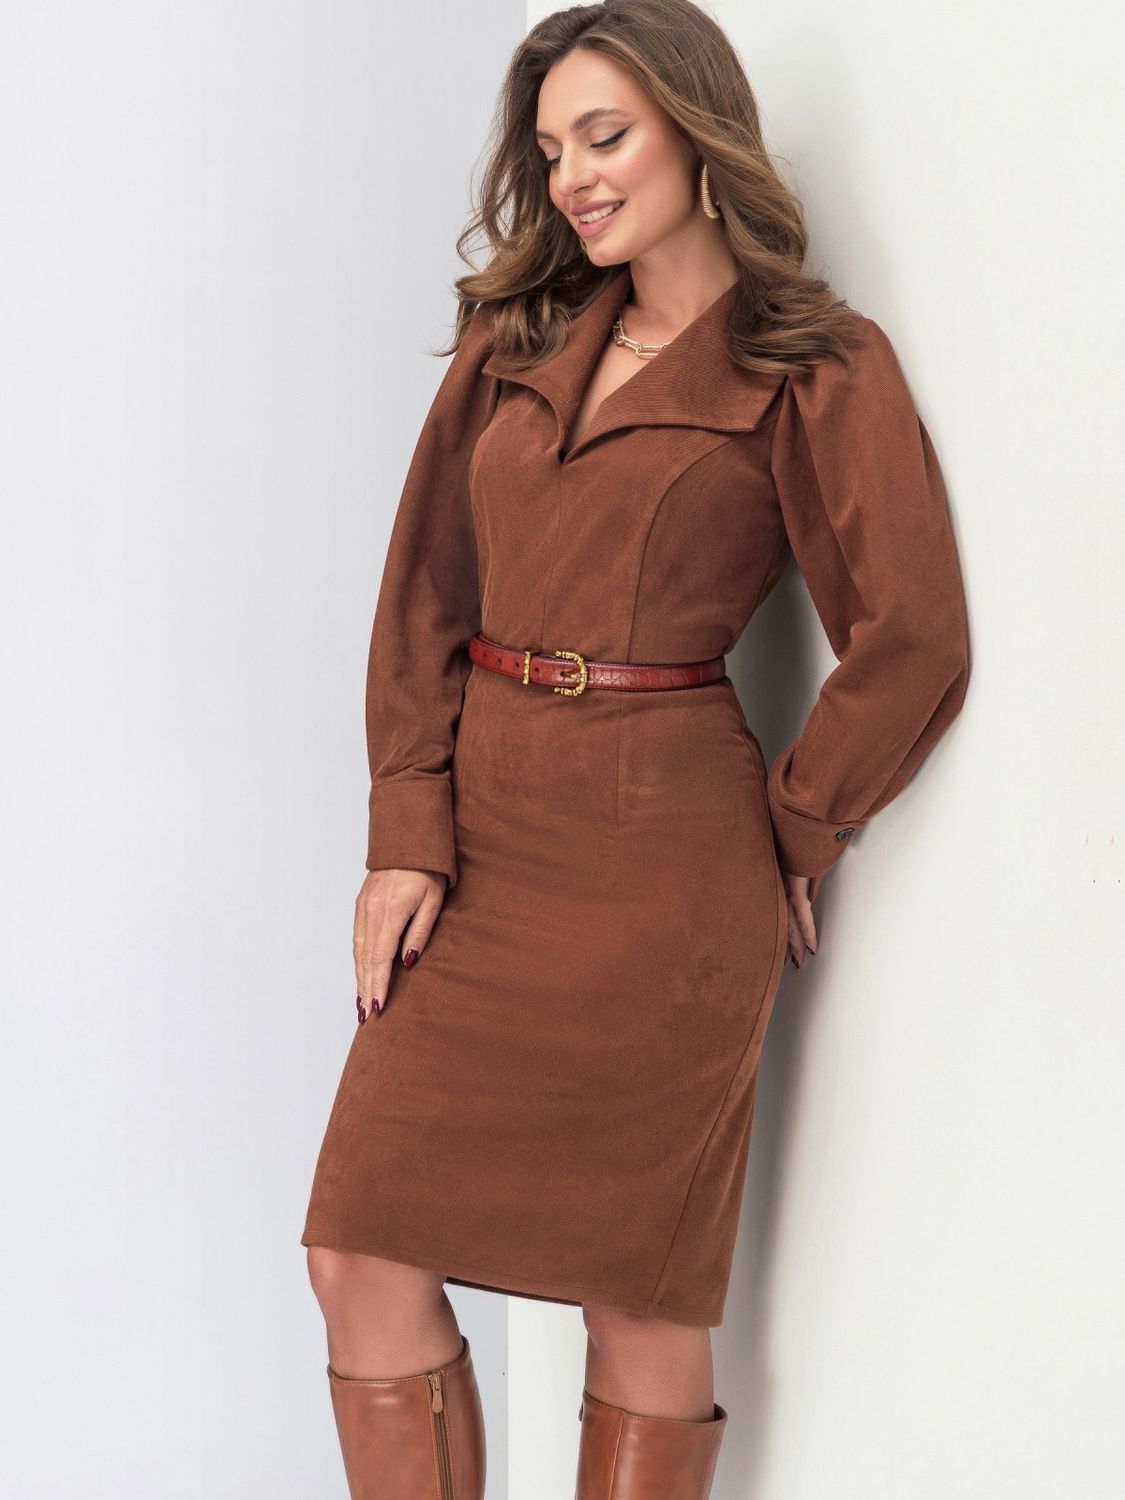 Замшева сукня в офісно-діловому стилі коричневого кольору - фото